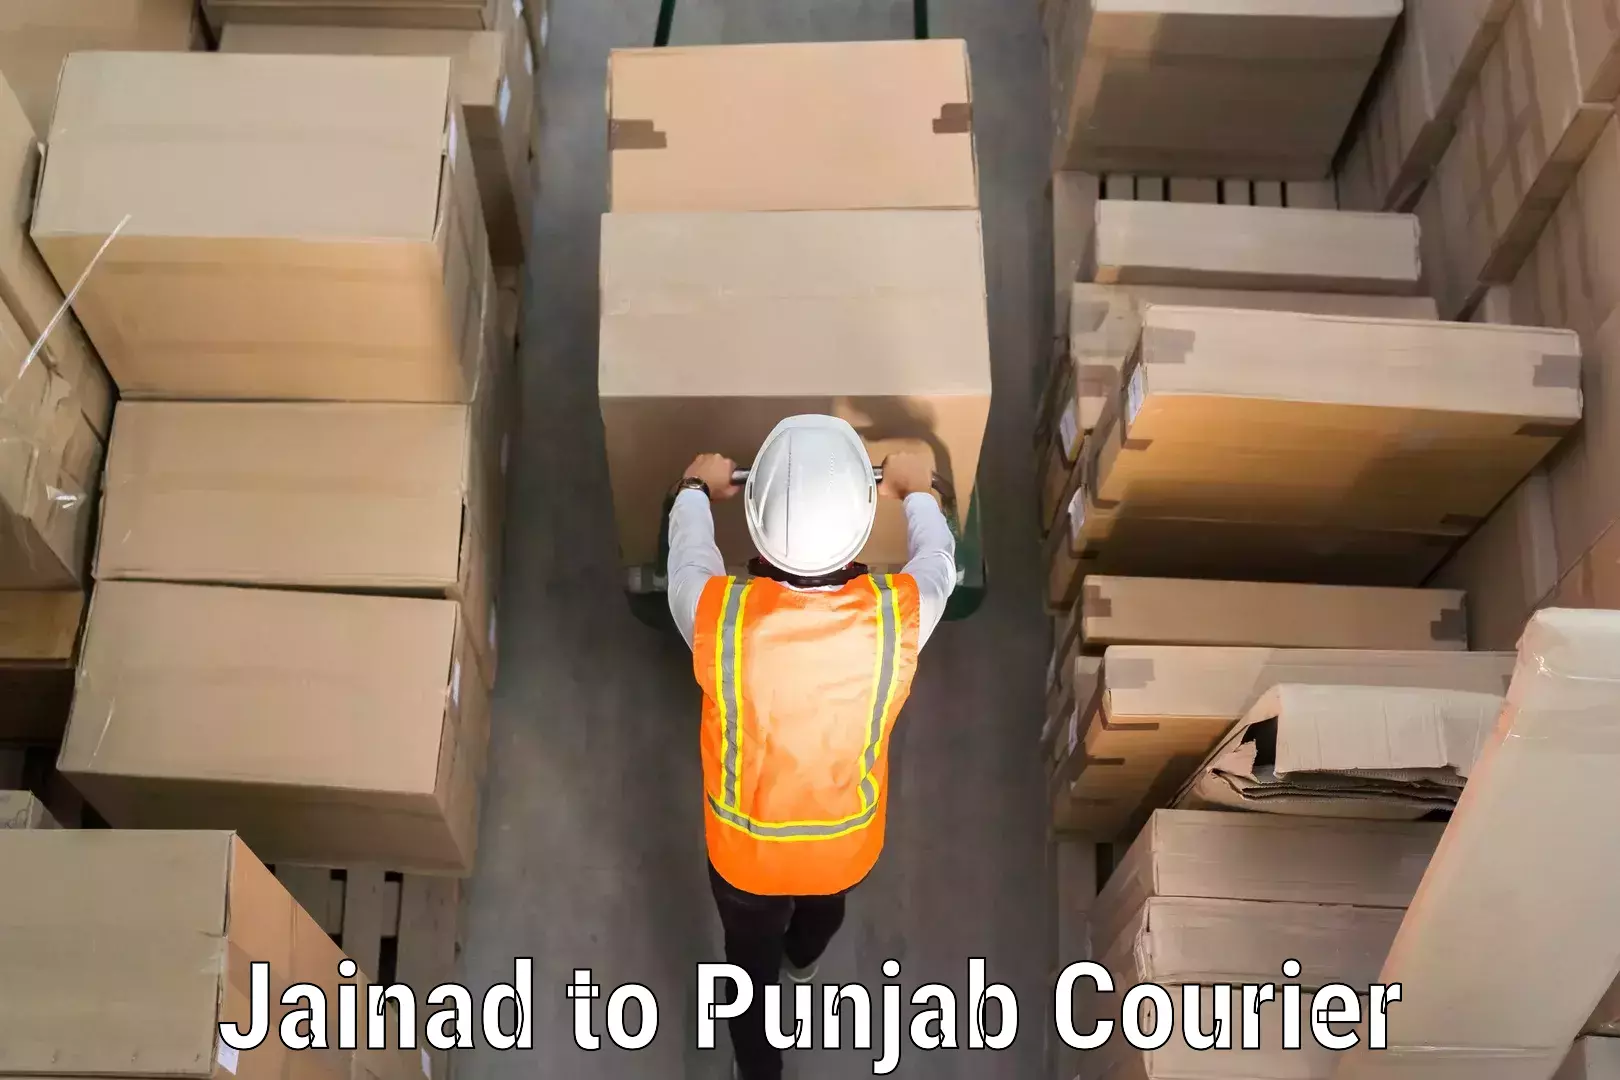 Luggage delivery optimization Jainad to Punjab